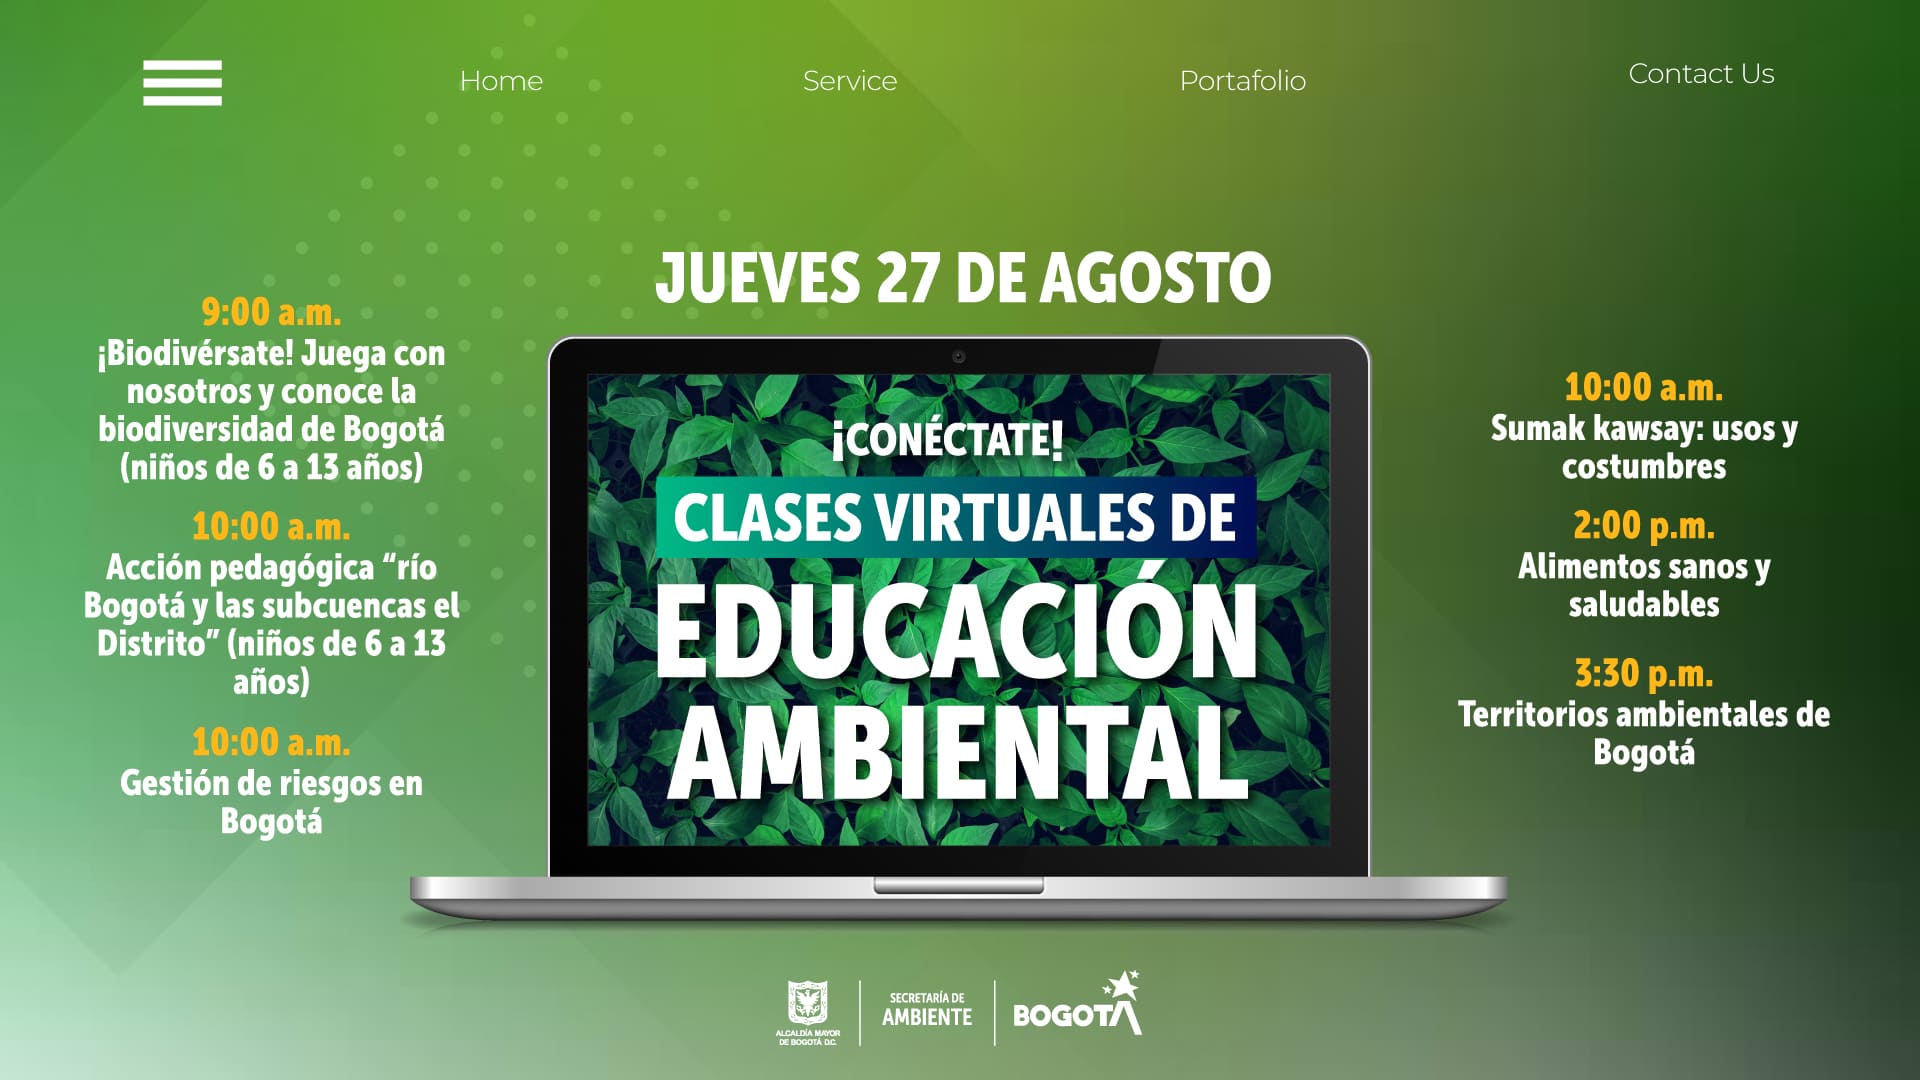 Clases virtuales educación ambiental